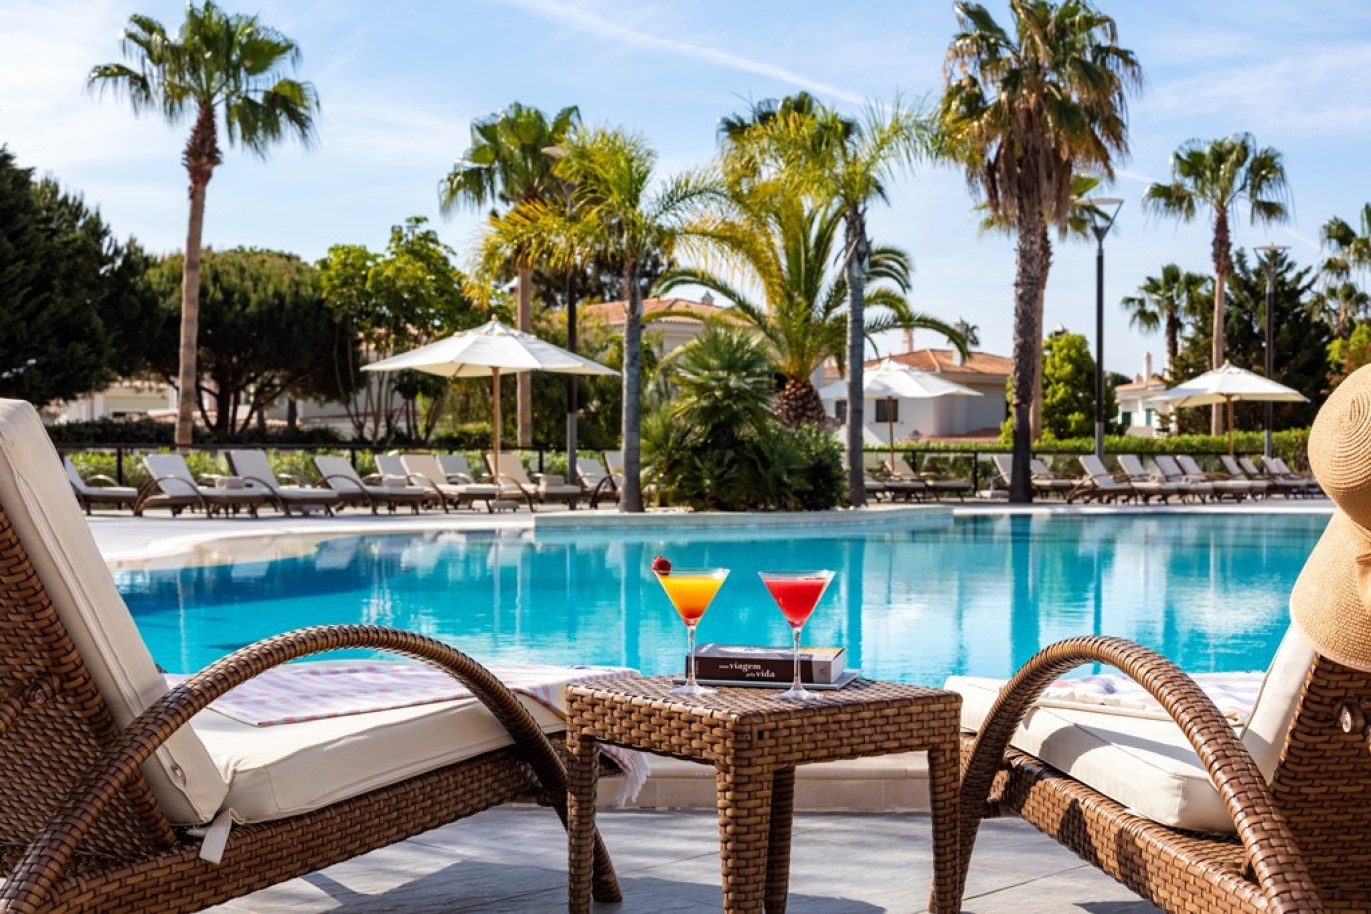 Apartamento, 2 quartos, piscina, para venda na Quinta do Lago, Algarve_263459